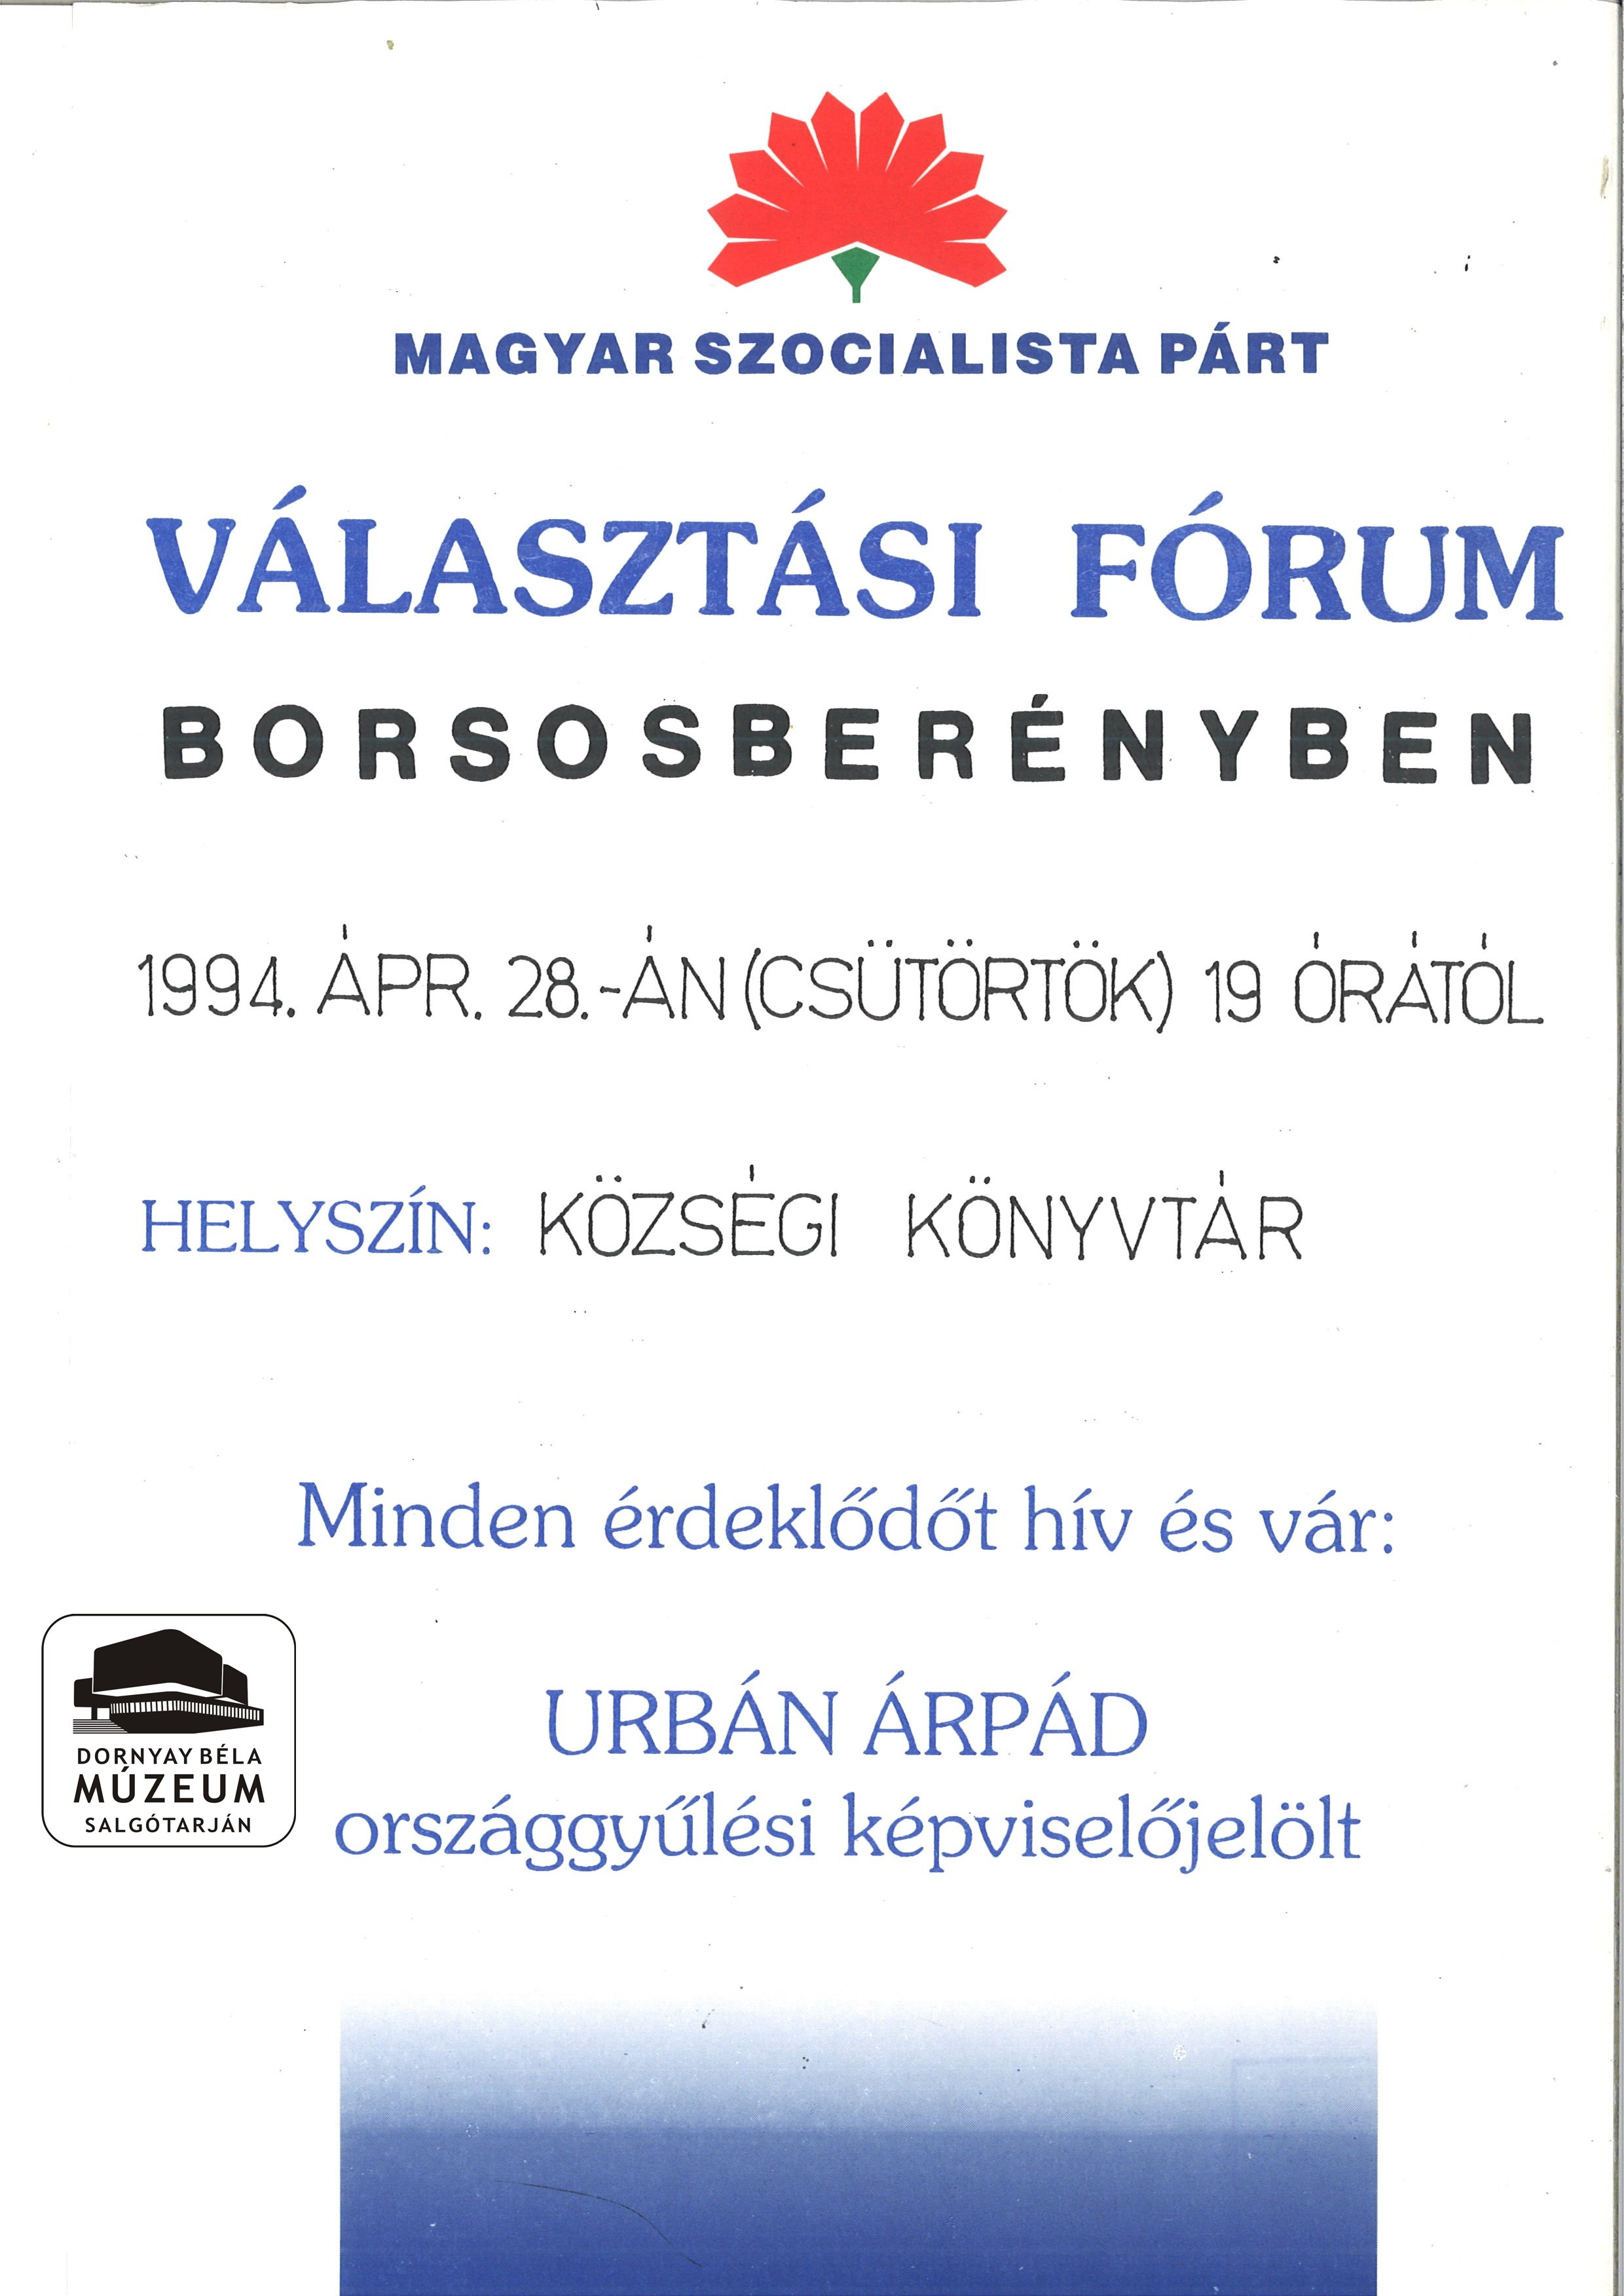 MSZP választási fórum (Urán Árpád képviselőjelölt) (Dornyay Béla Múzeum, Salgótarján CC BY-NC-SA)